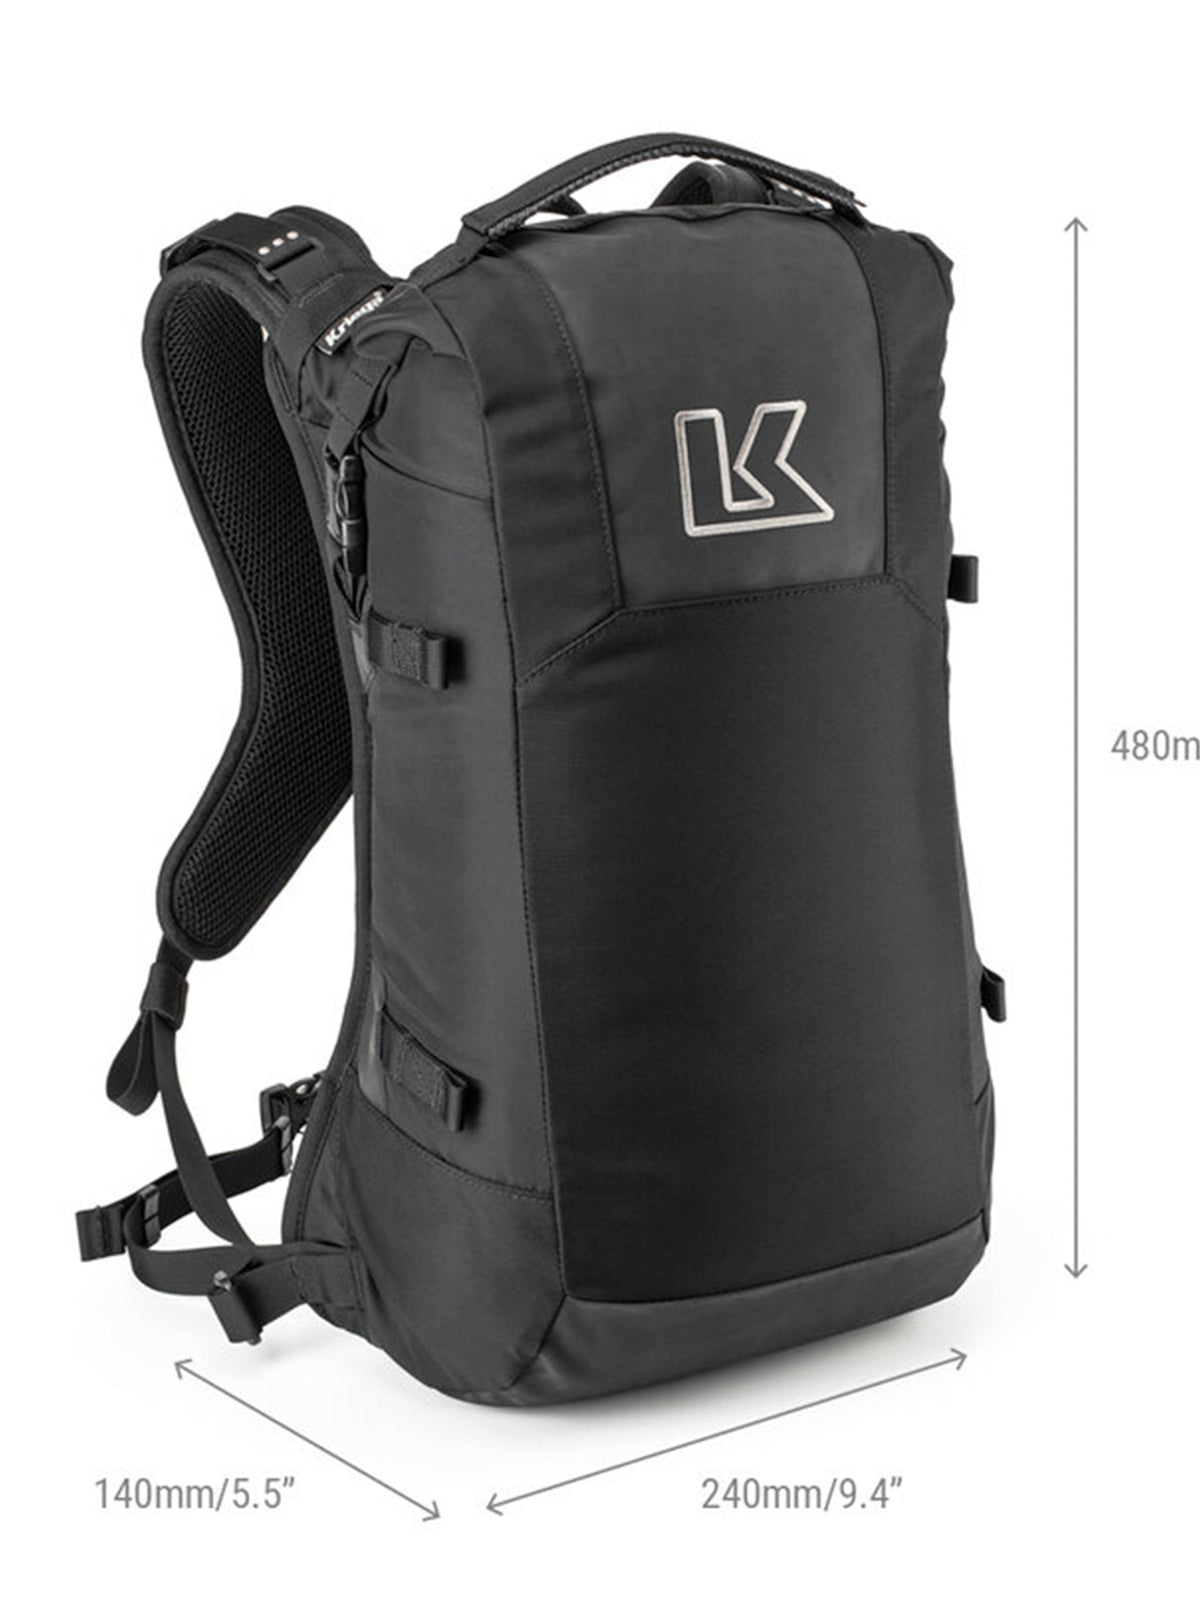 Kriega R16 Backpack dimensions